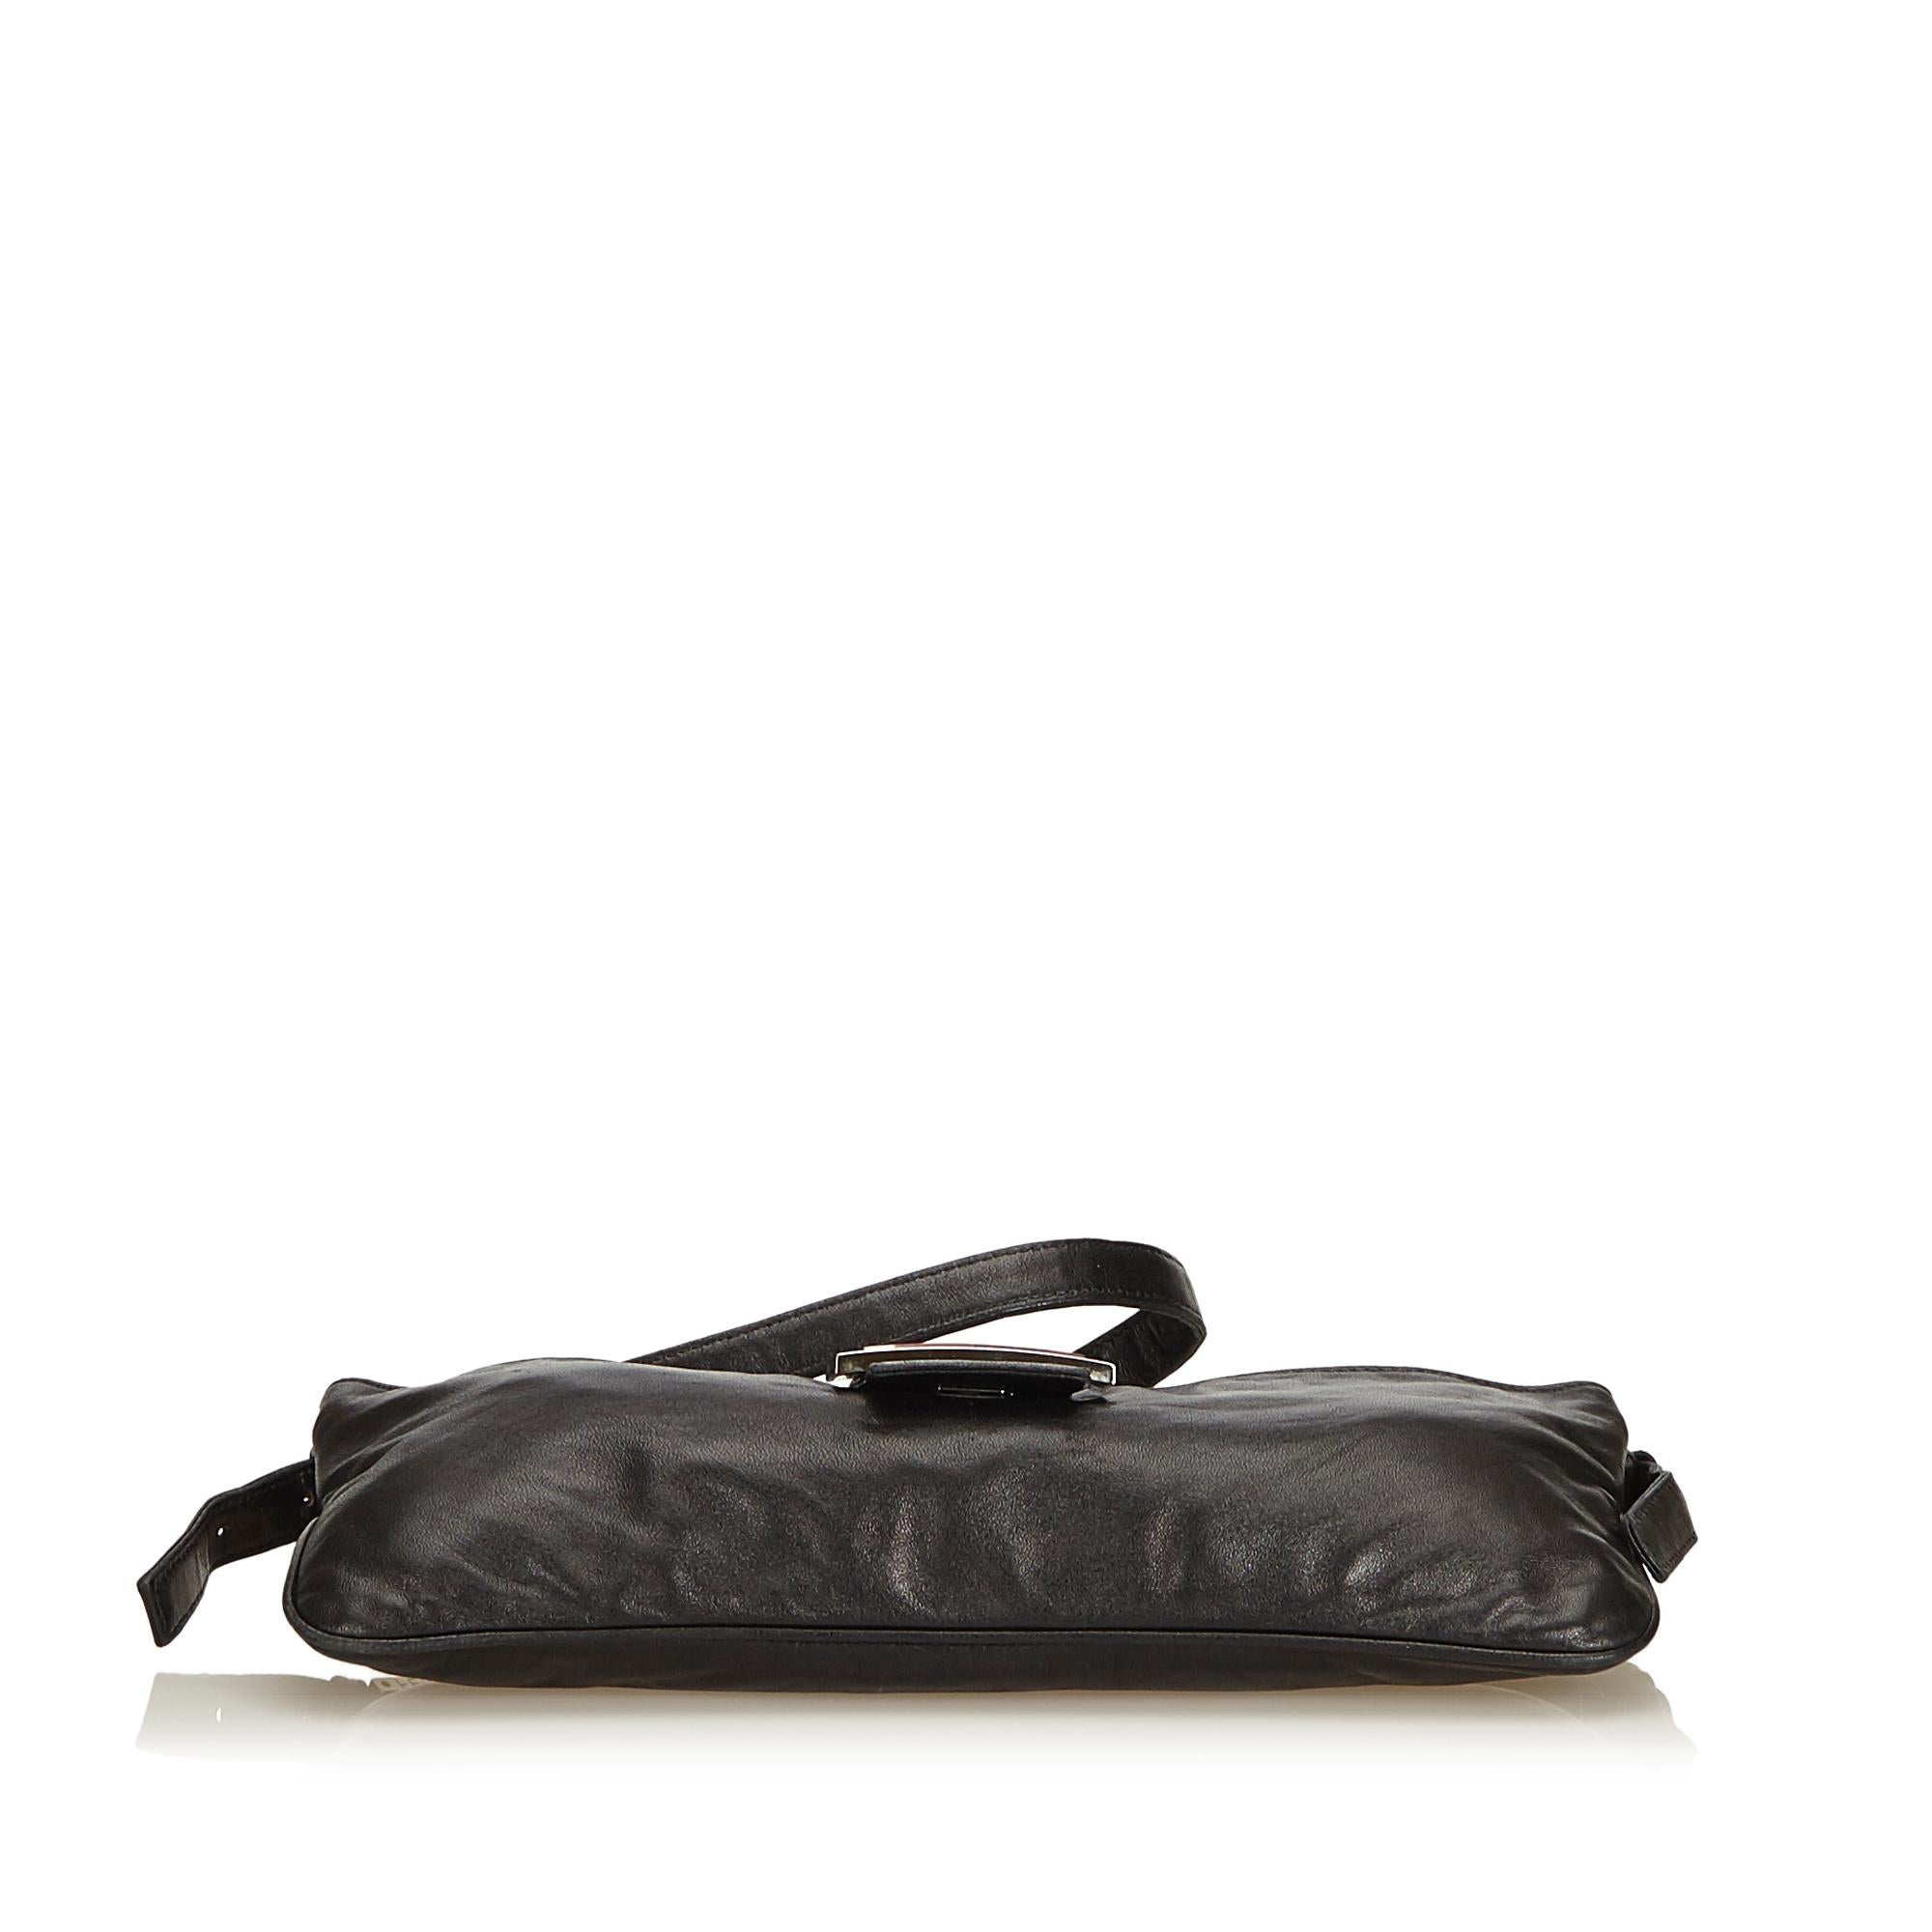 Women's or Men's Fendi Black Leather Crossbody Bag